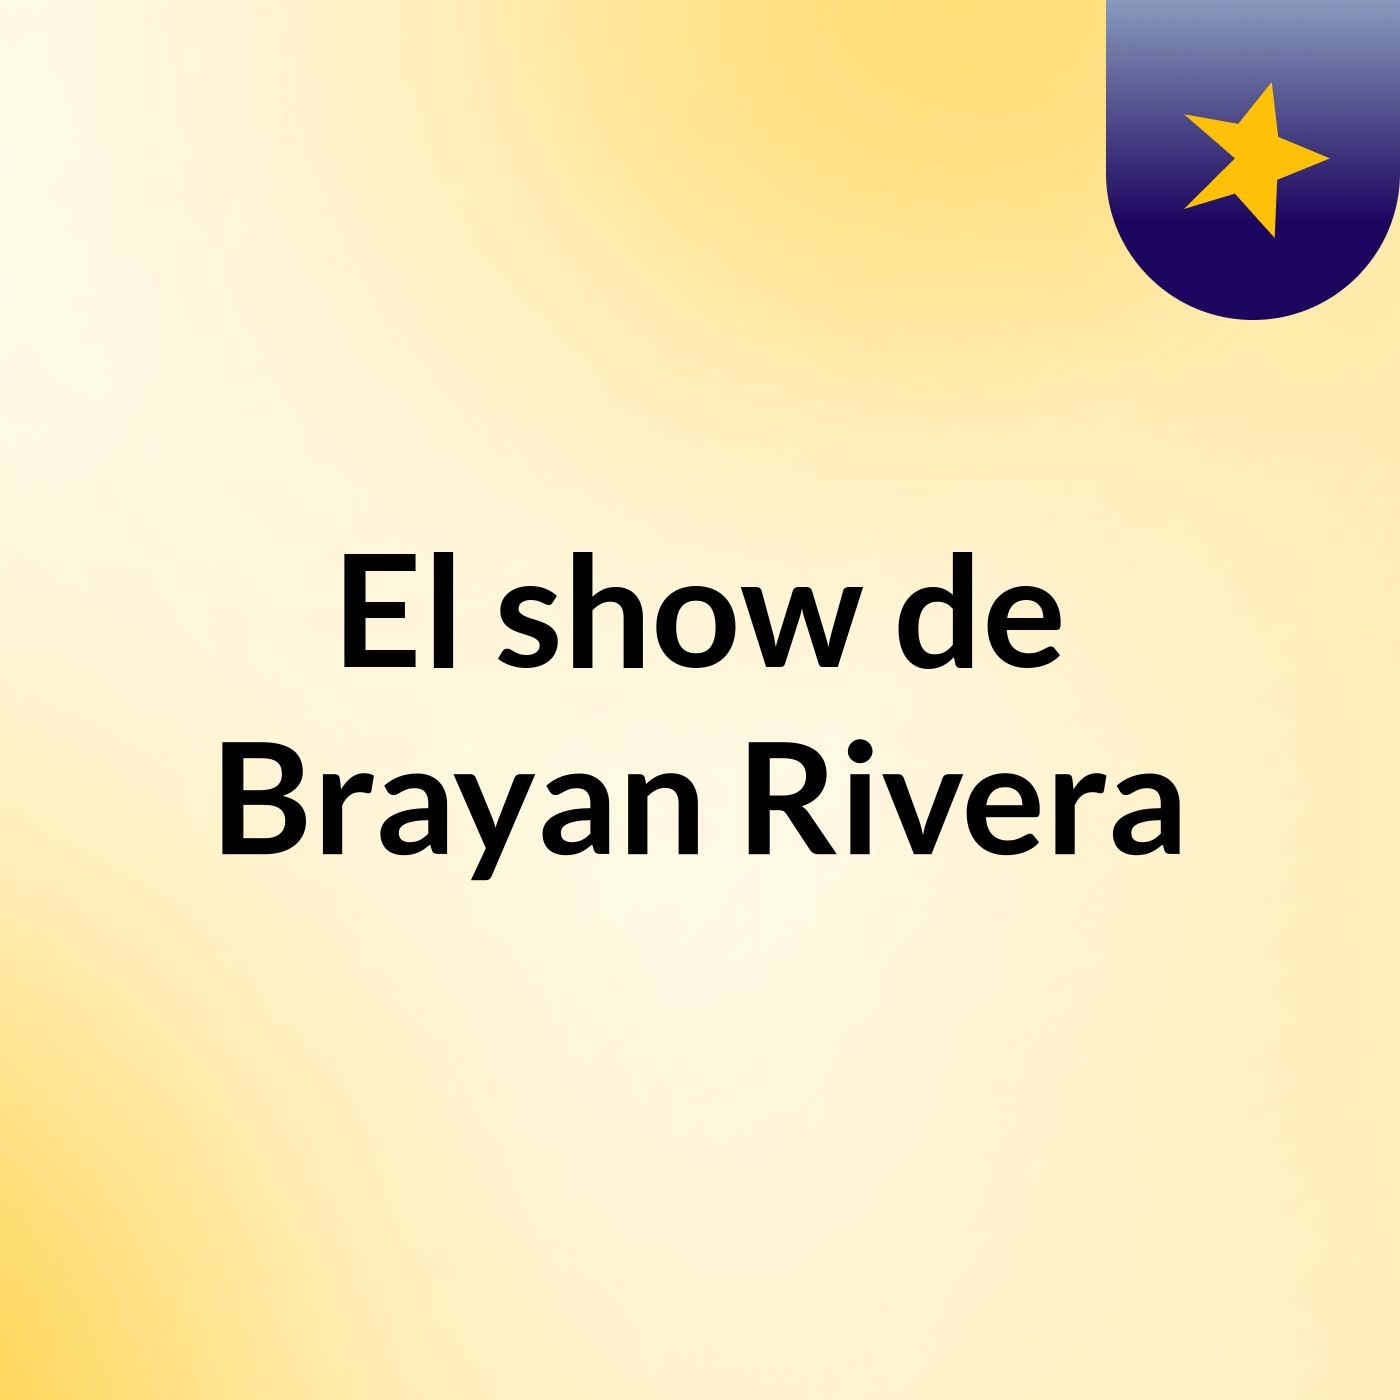 El show de Brayan Rivera